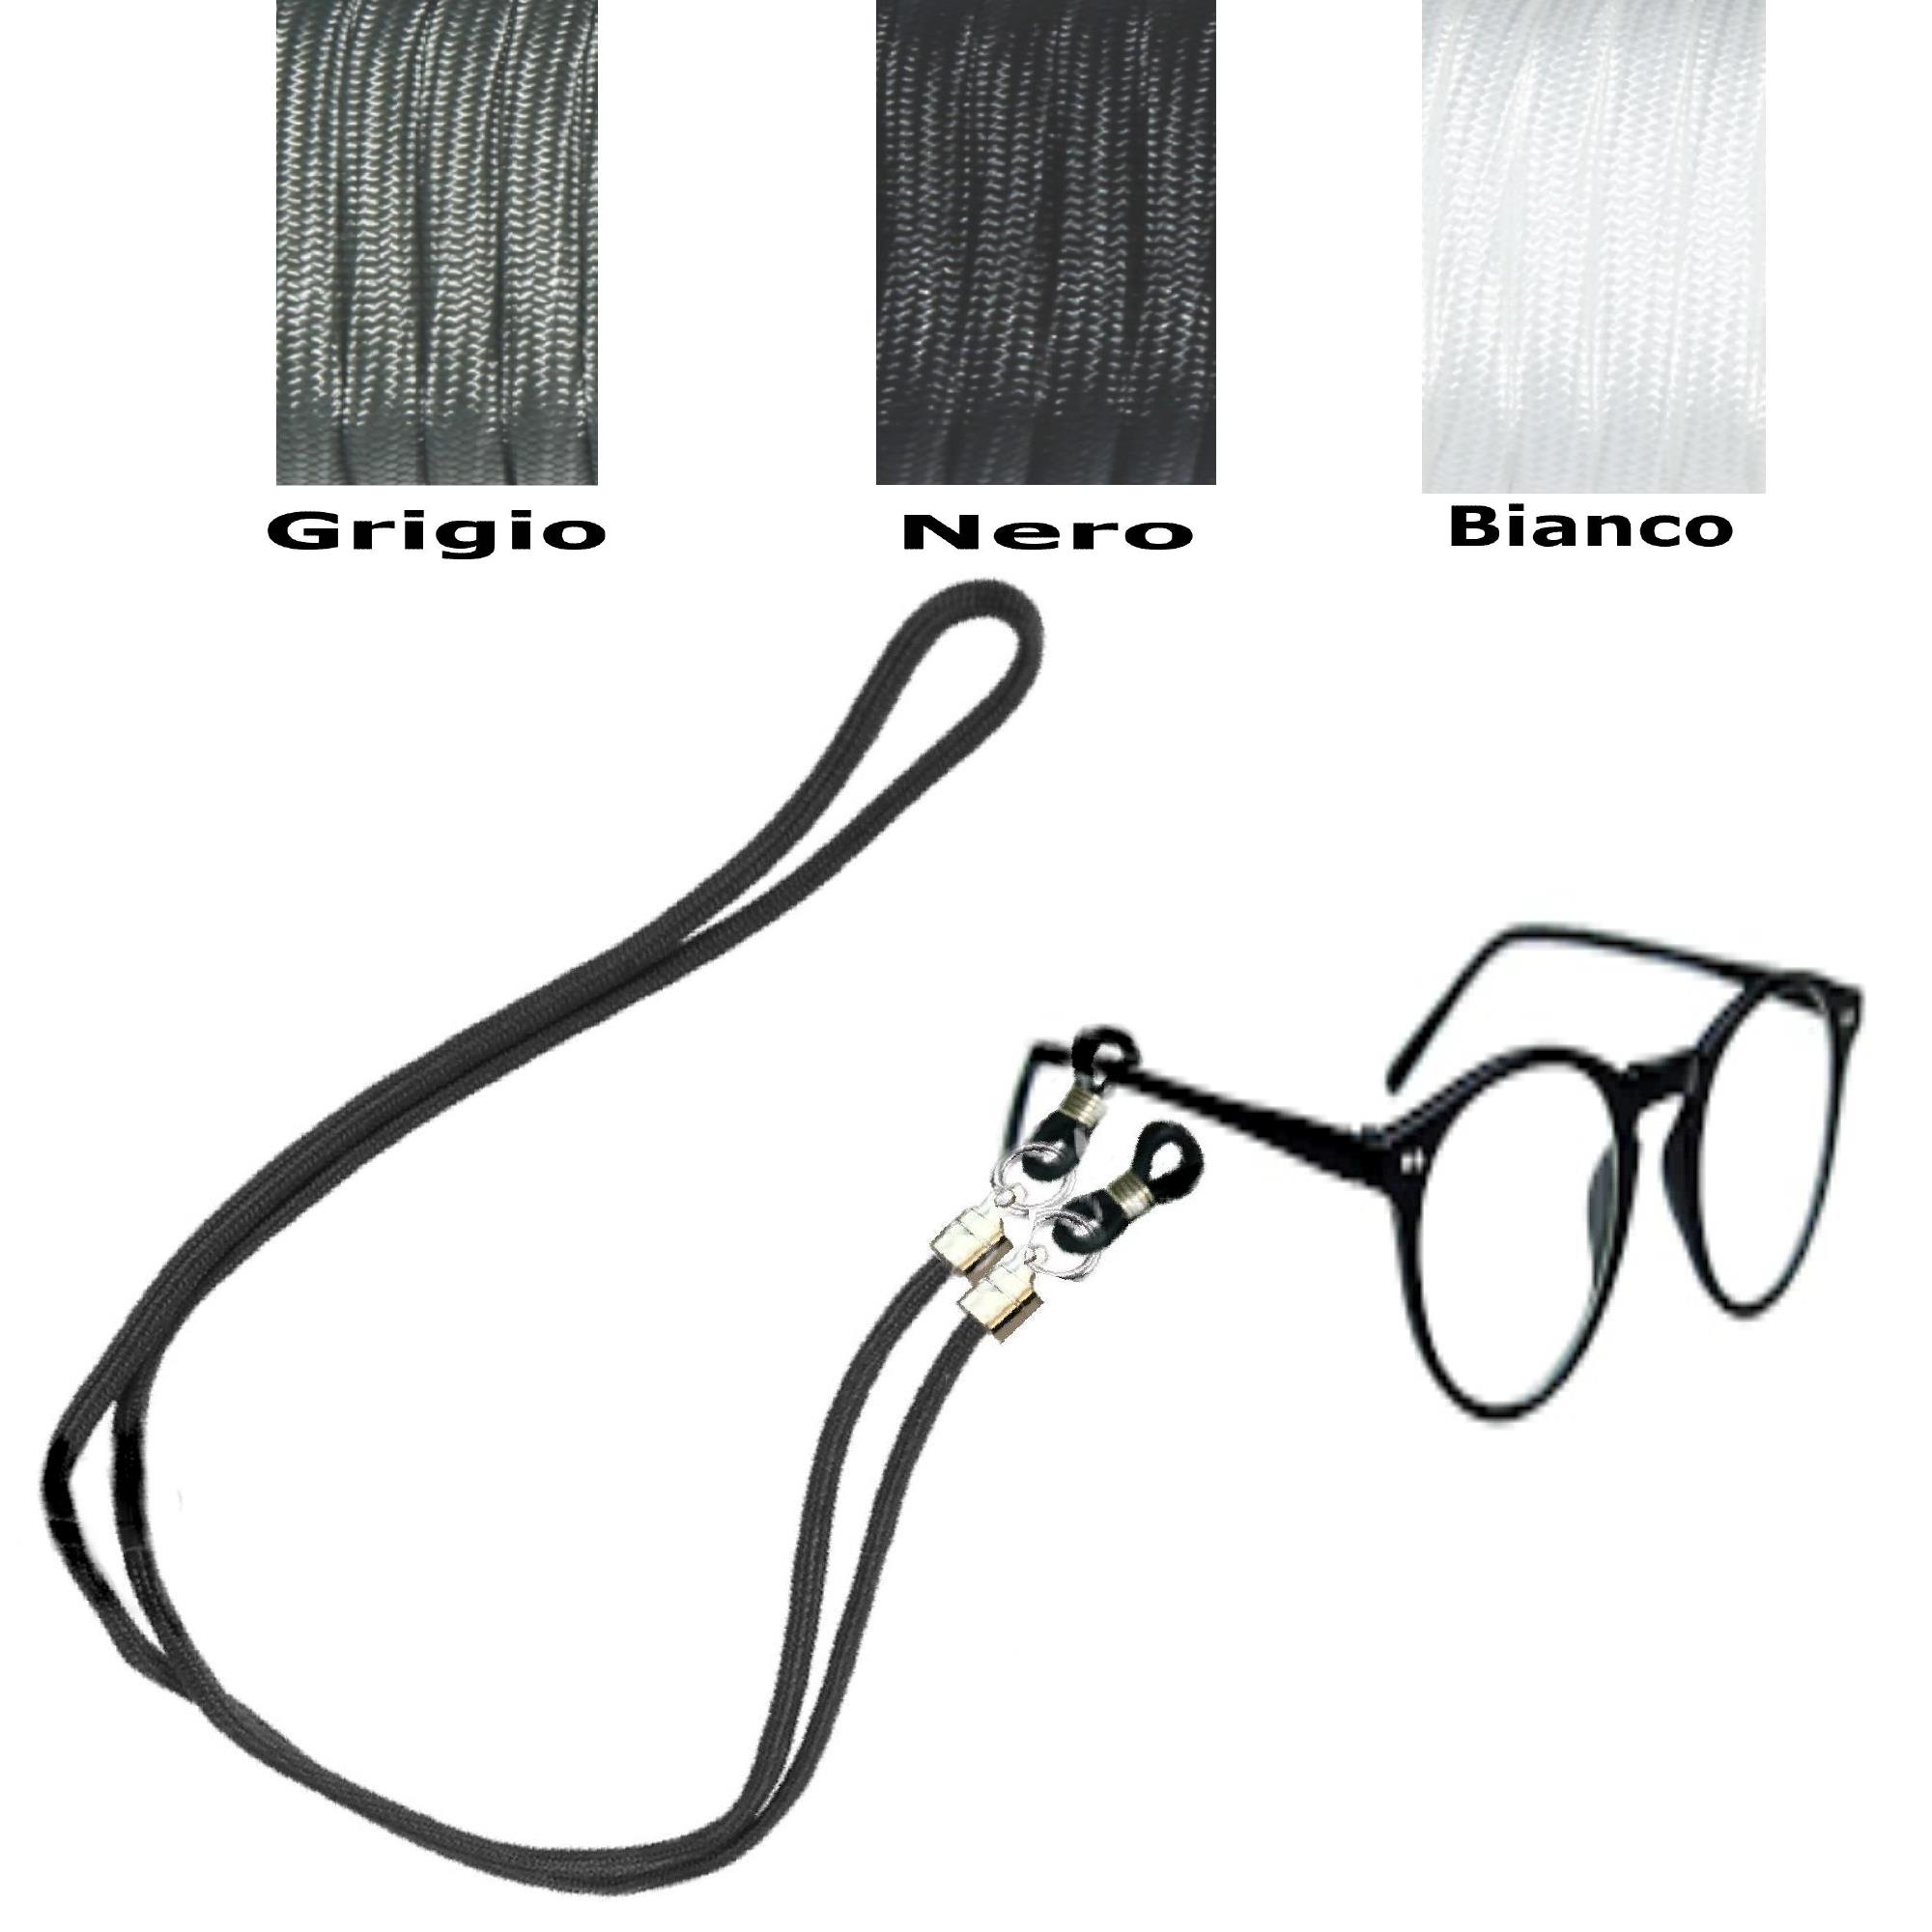 2x Laccio per occhiali universale da sole vista da lettura sport cordino 70 cm